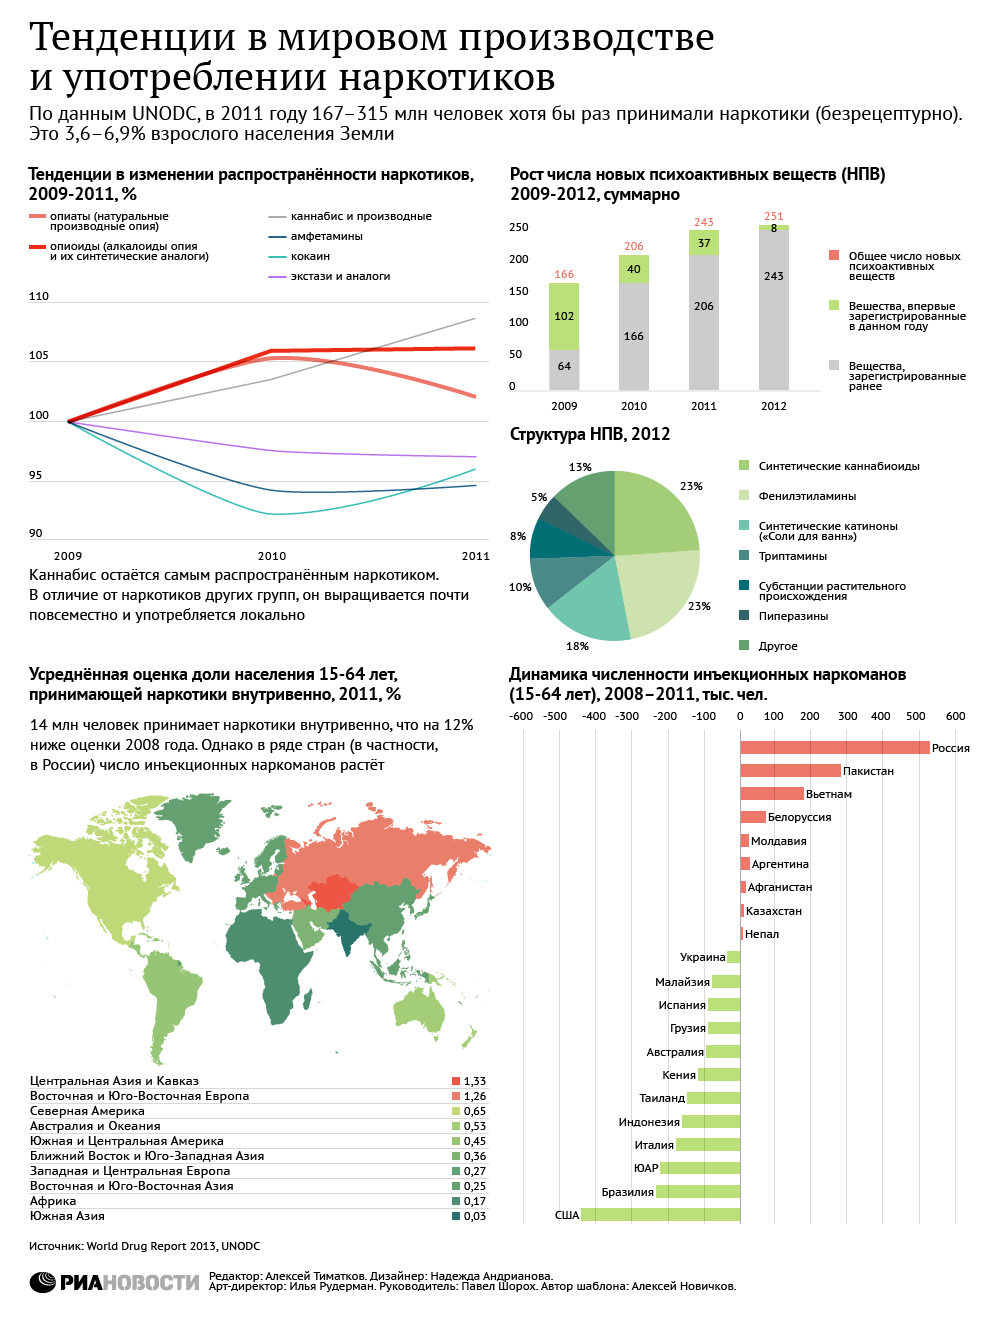 Тенденции в мировом производстве и употреблении наркотиков